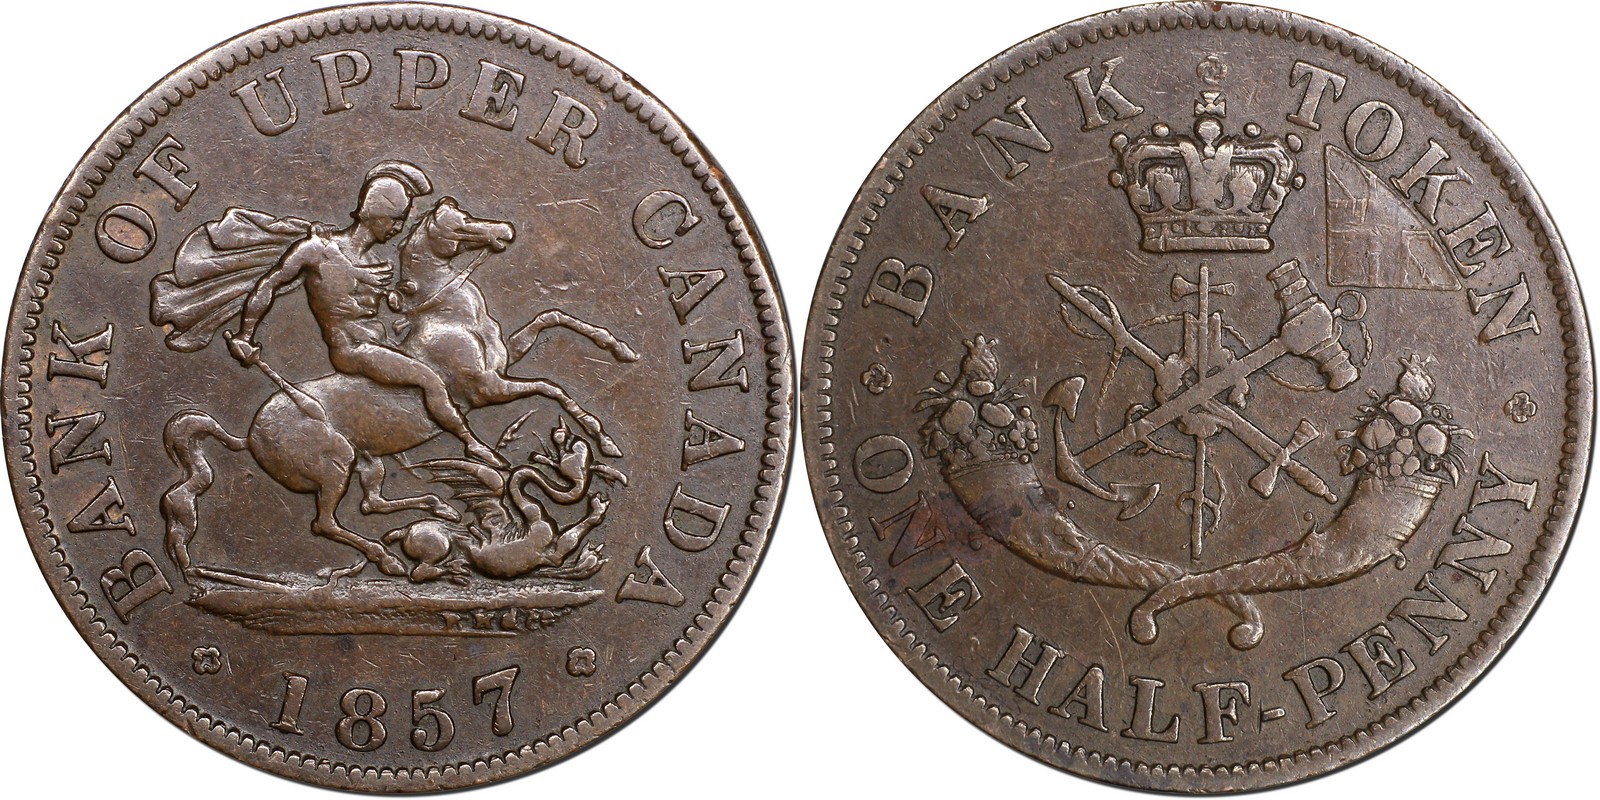 À Vendre - Half Penny 1857 - Courteau #162 (20230494).jpg